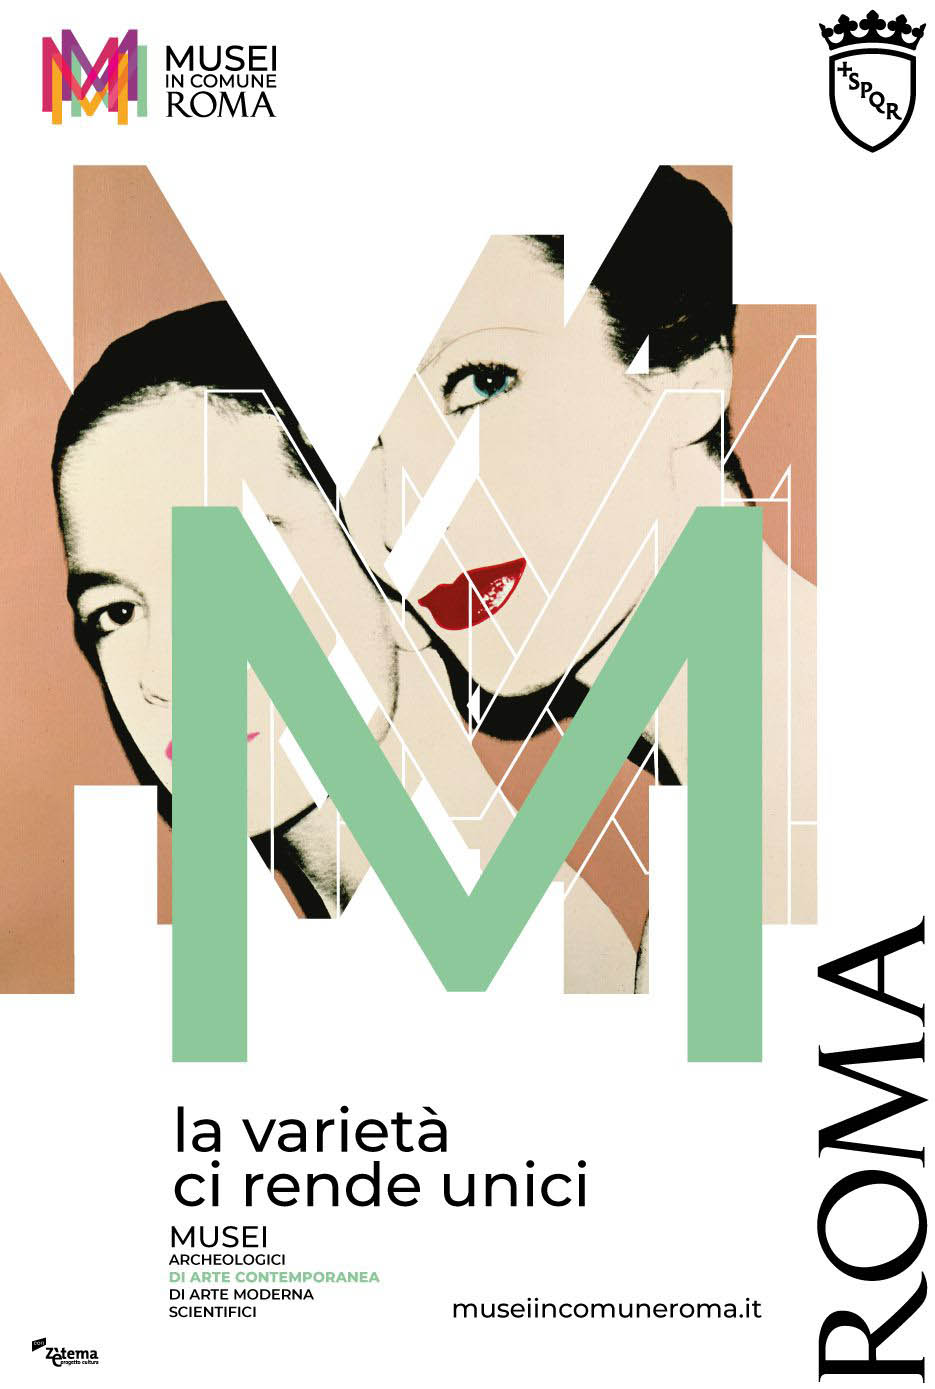 , Nuova brand identity e campagna adv per i Musei di Roma